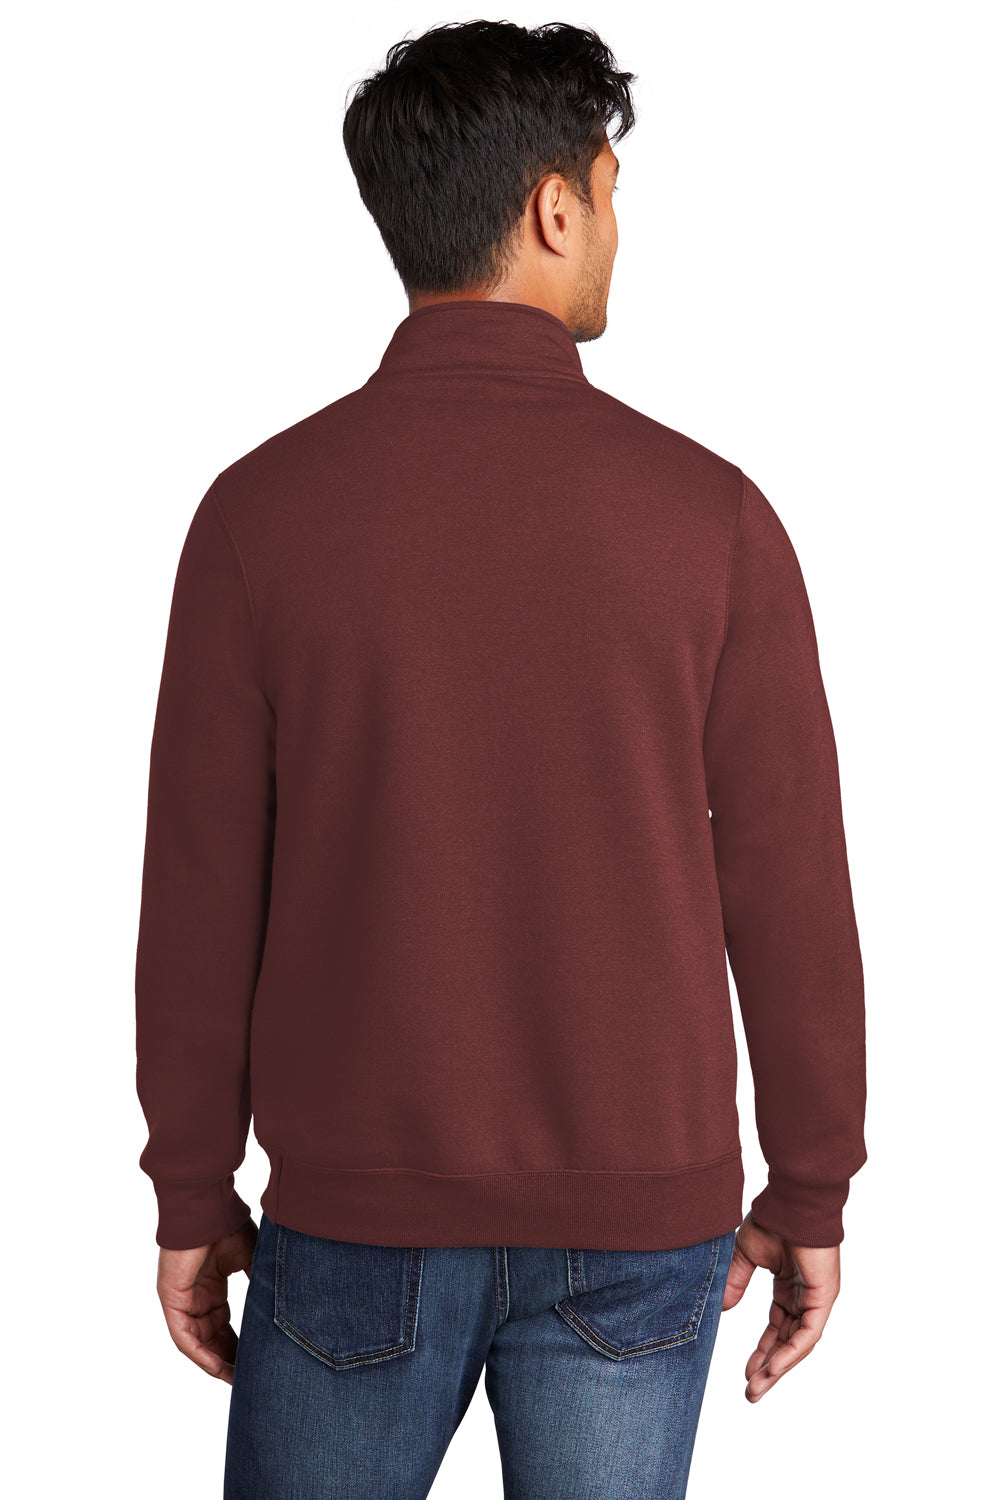 Port & Company Mens Core Fleece 1/4 Zip Sweatshirt Maroon Side